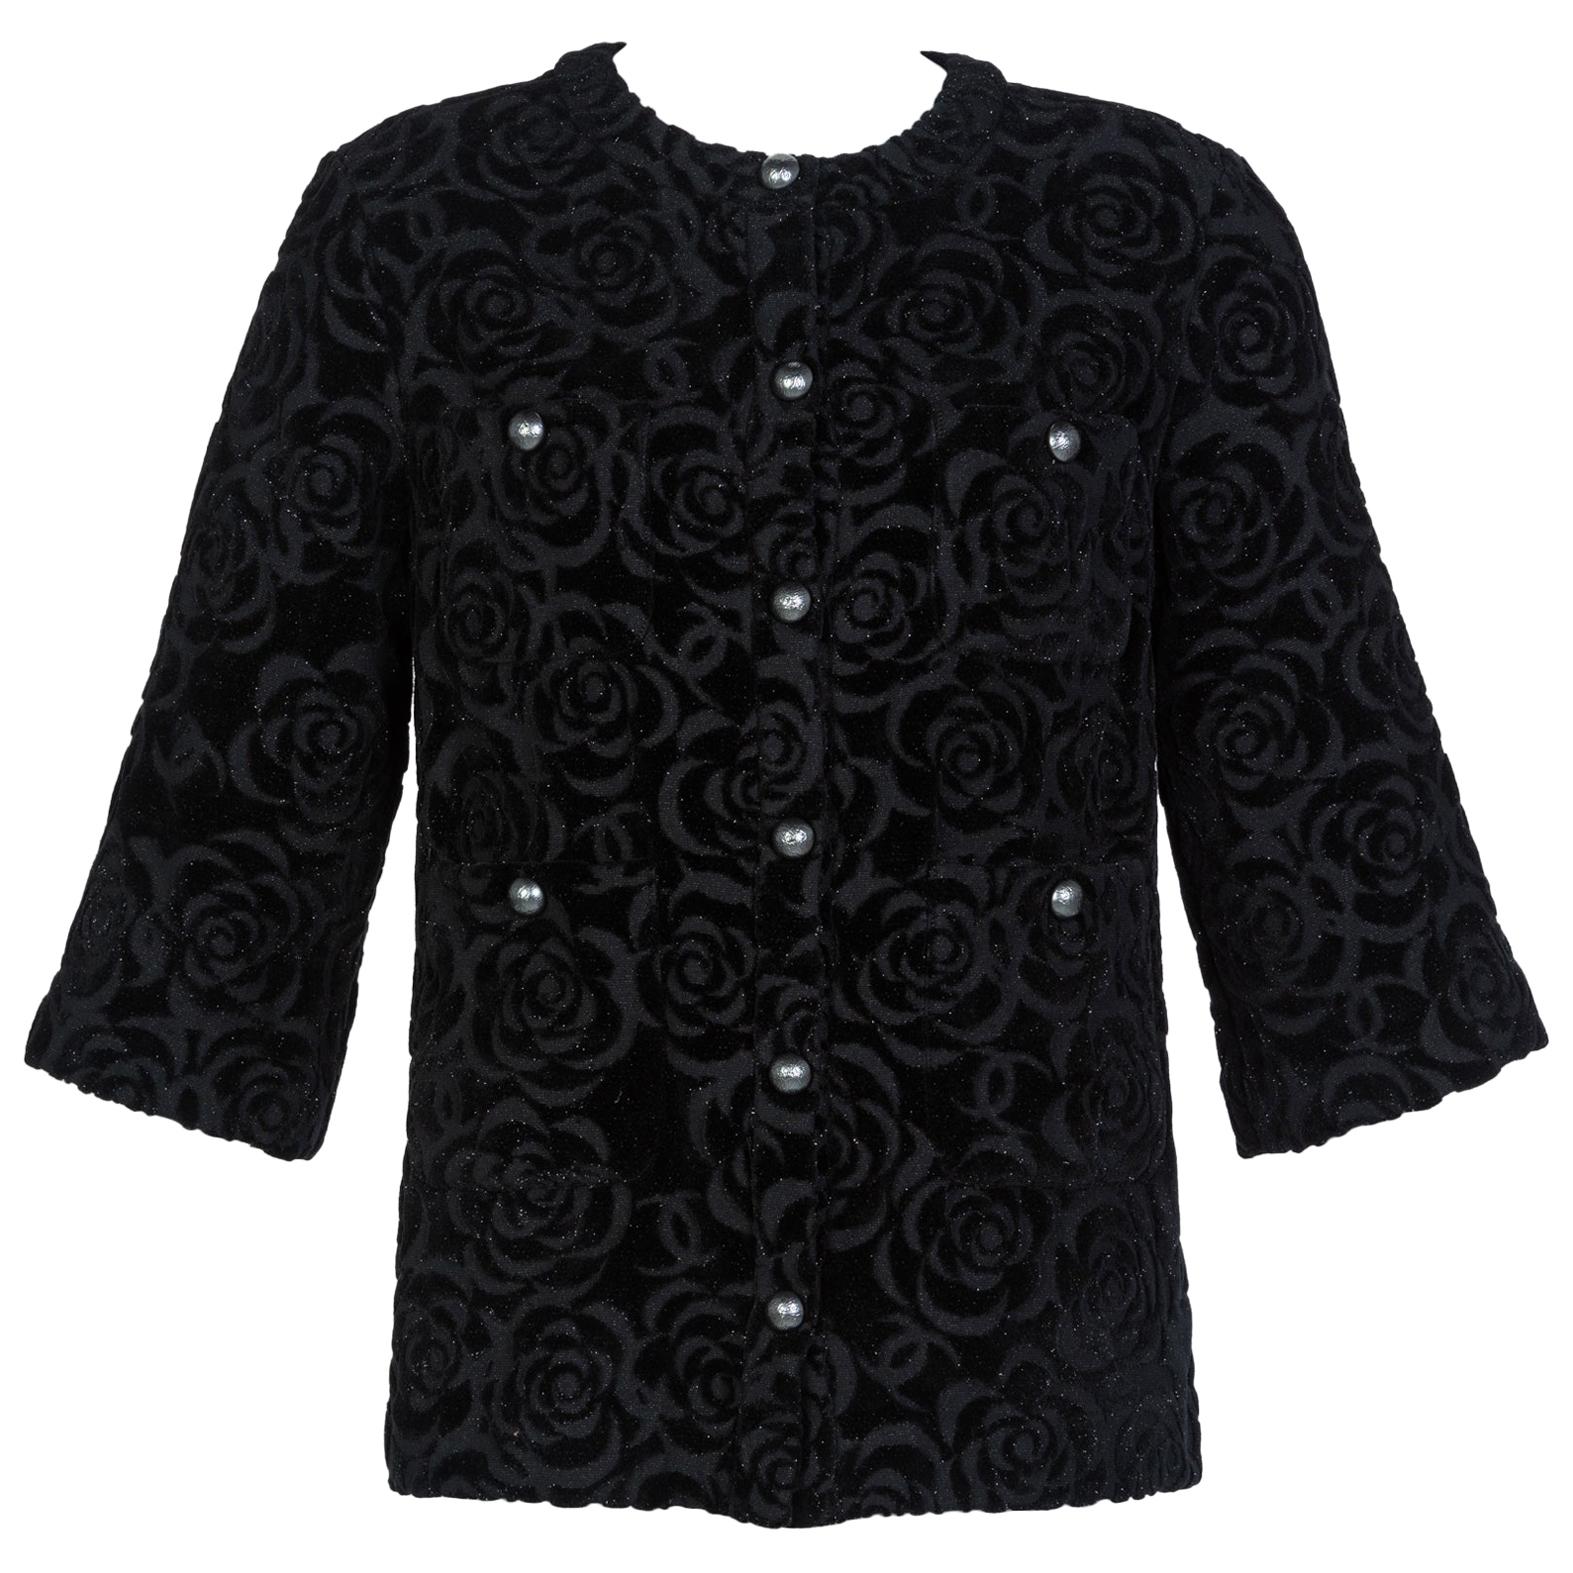 Chanel Black Camellia Foil Print Cotton T-Shirt XL